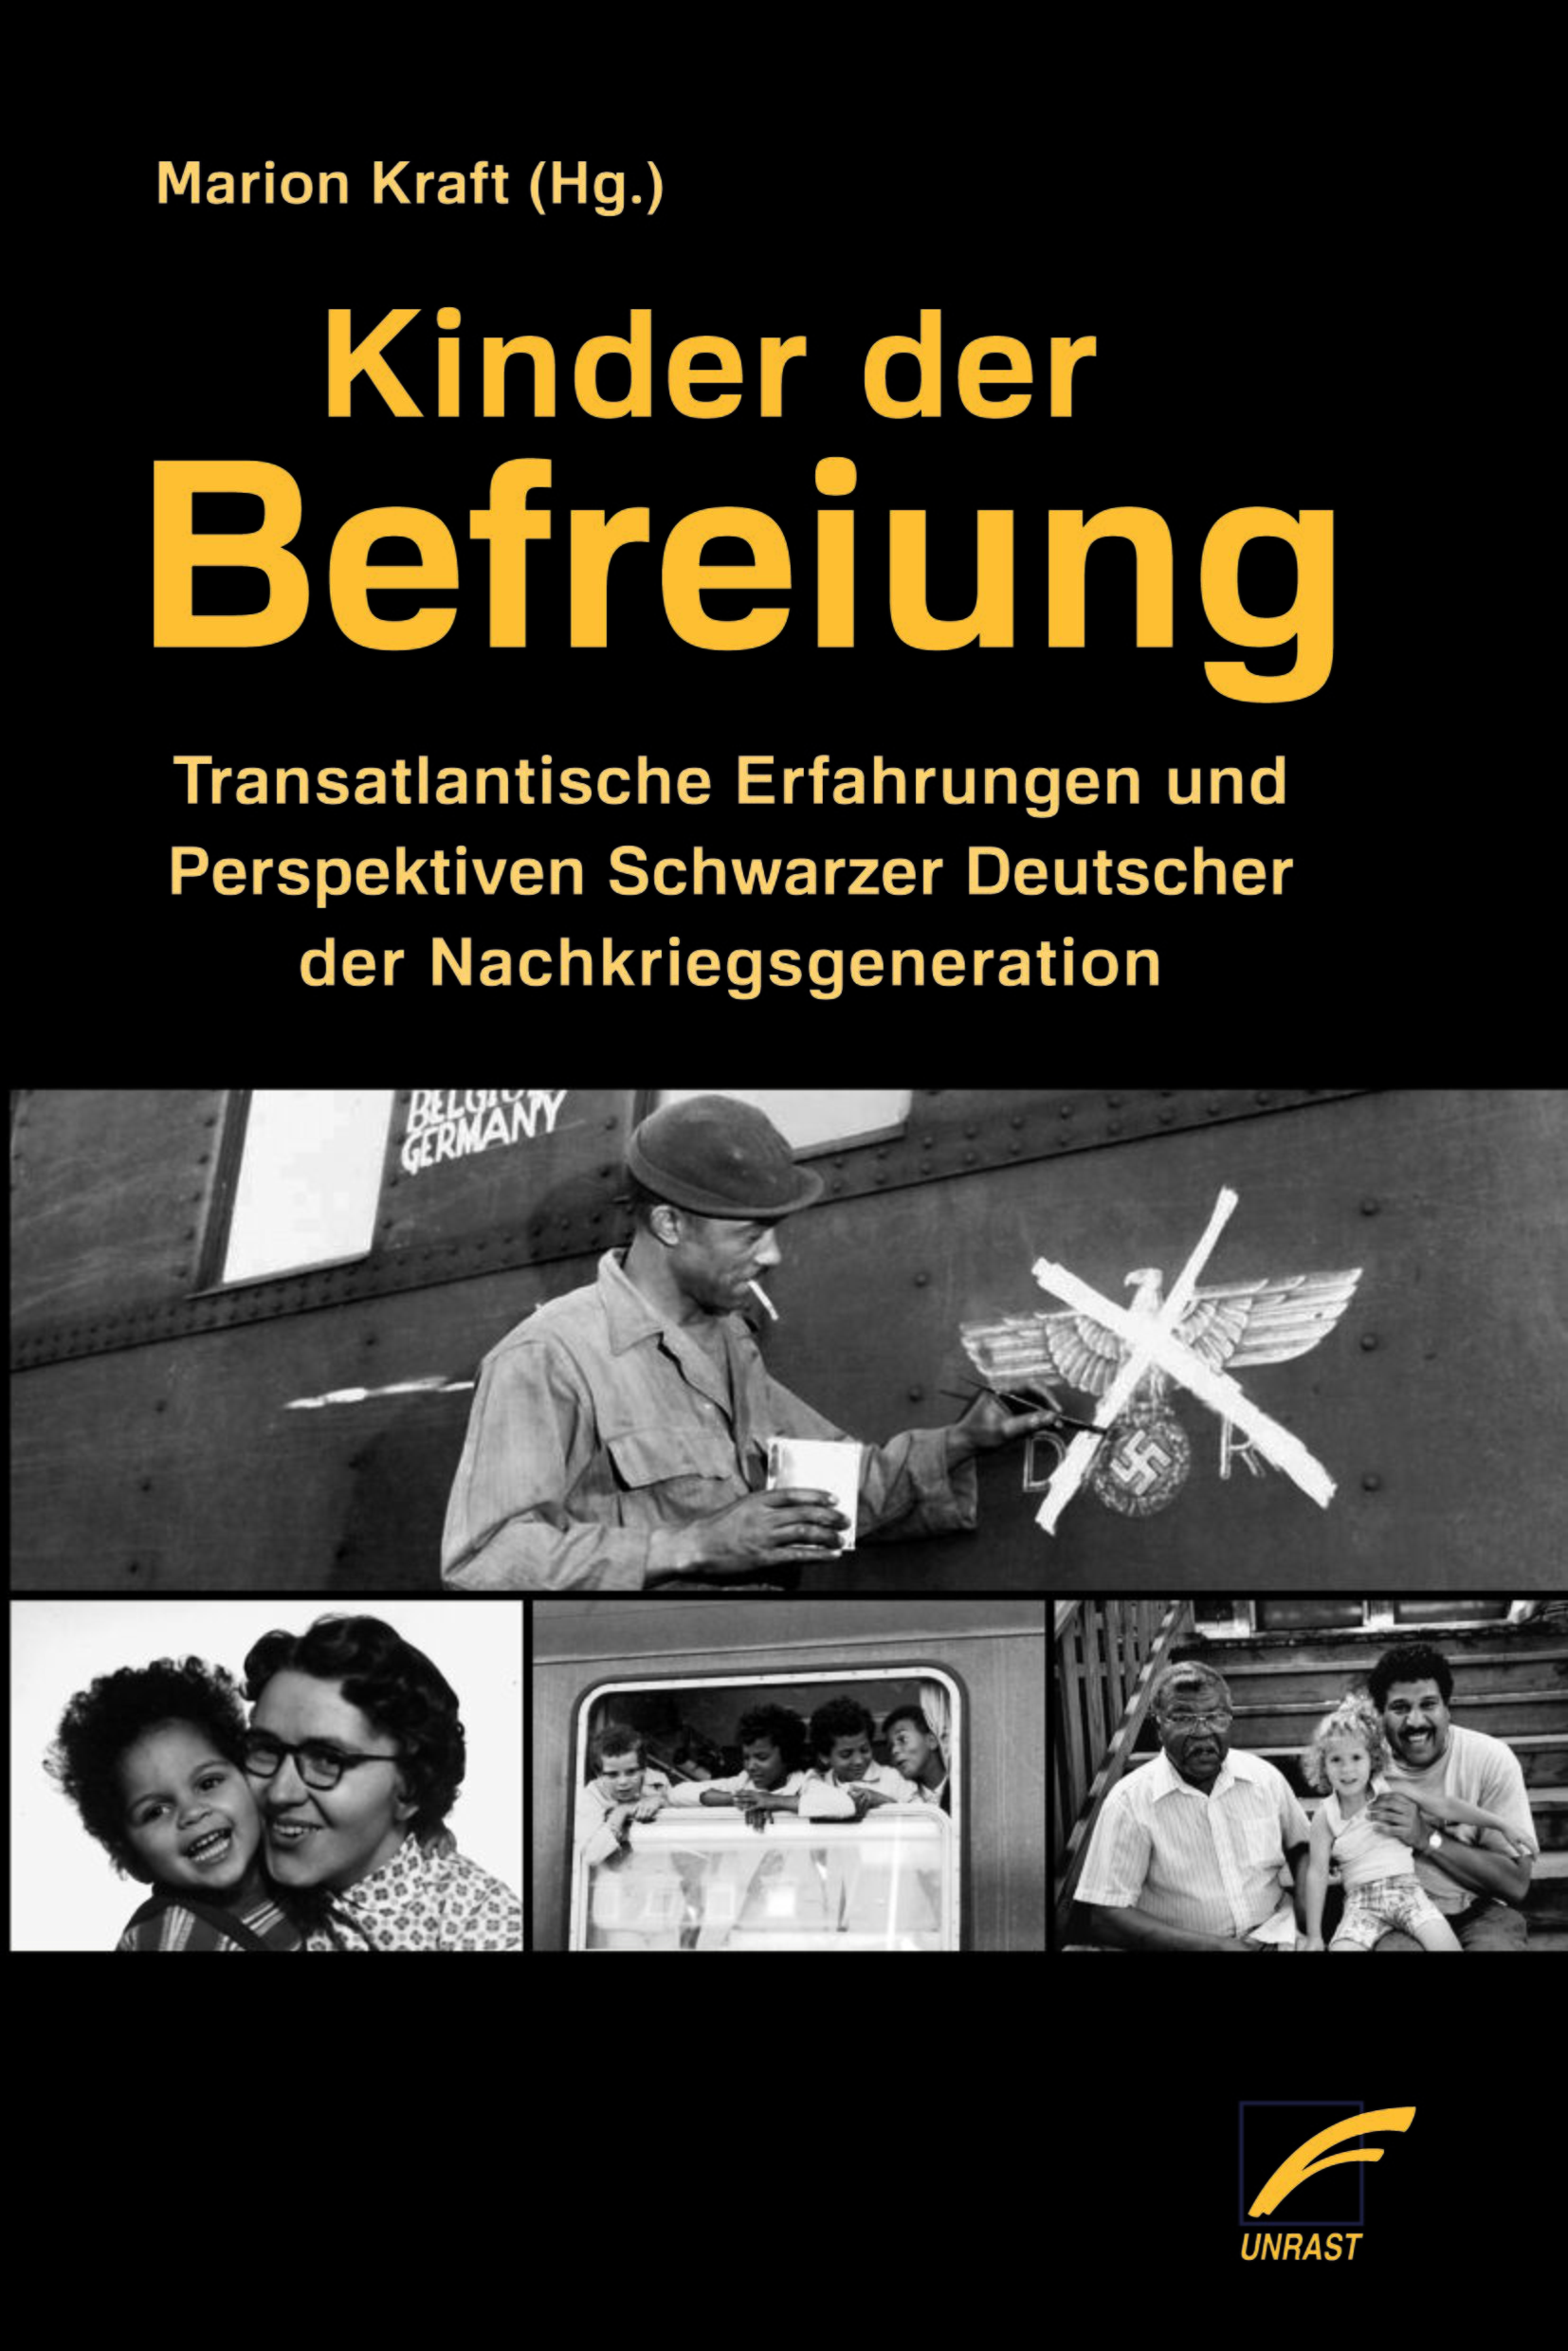 In der Anthologie „Kinder der Befreiung“, herausgegeben von Marion Kraft, berichten Betroffene über ihr Leben und ihre Erfahrungen in der Nachkriegszeit in Deutschland.